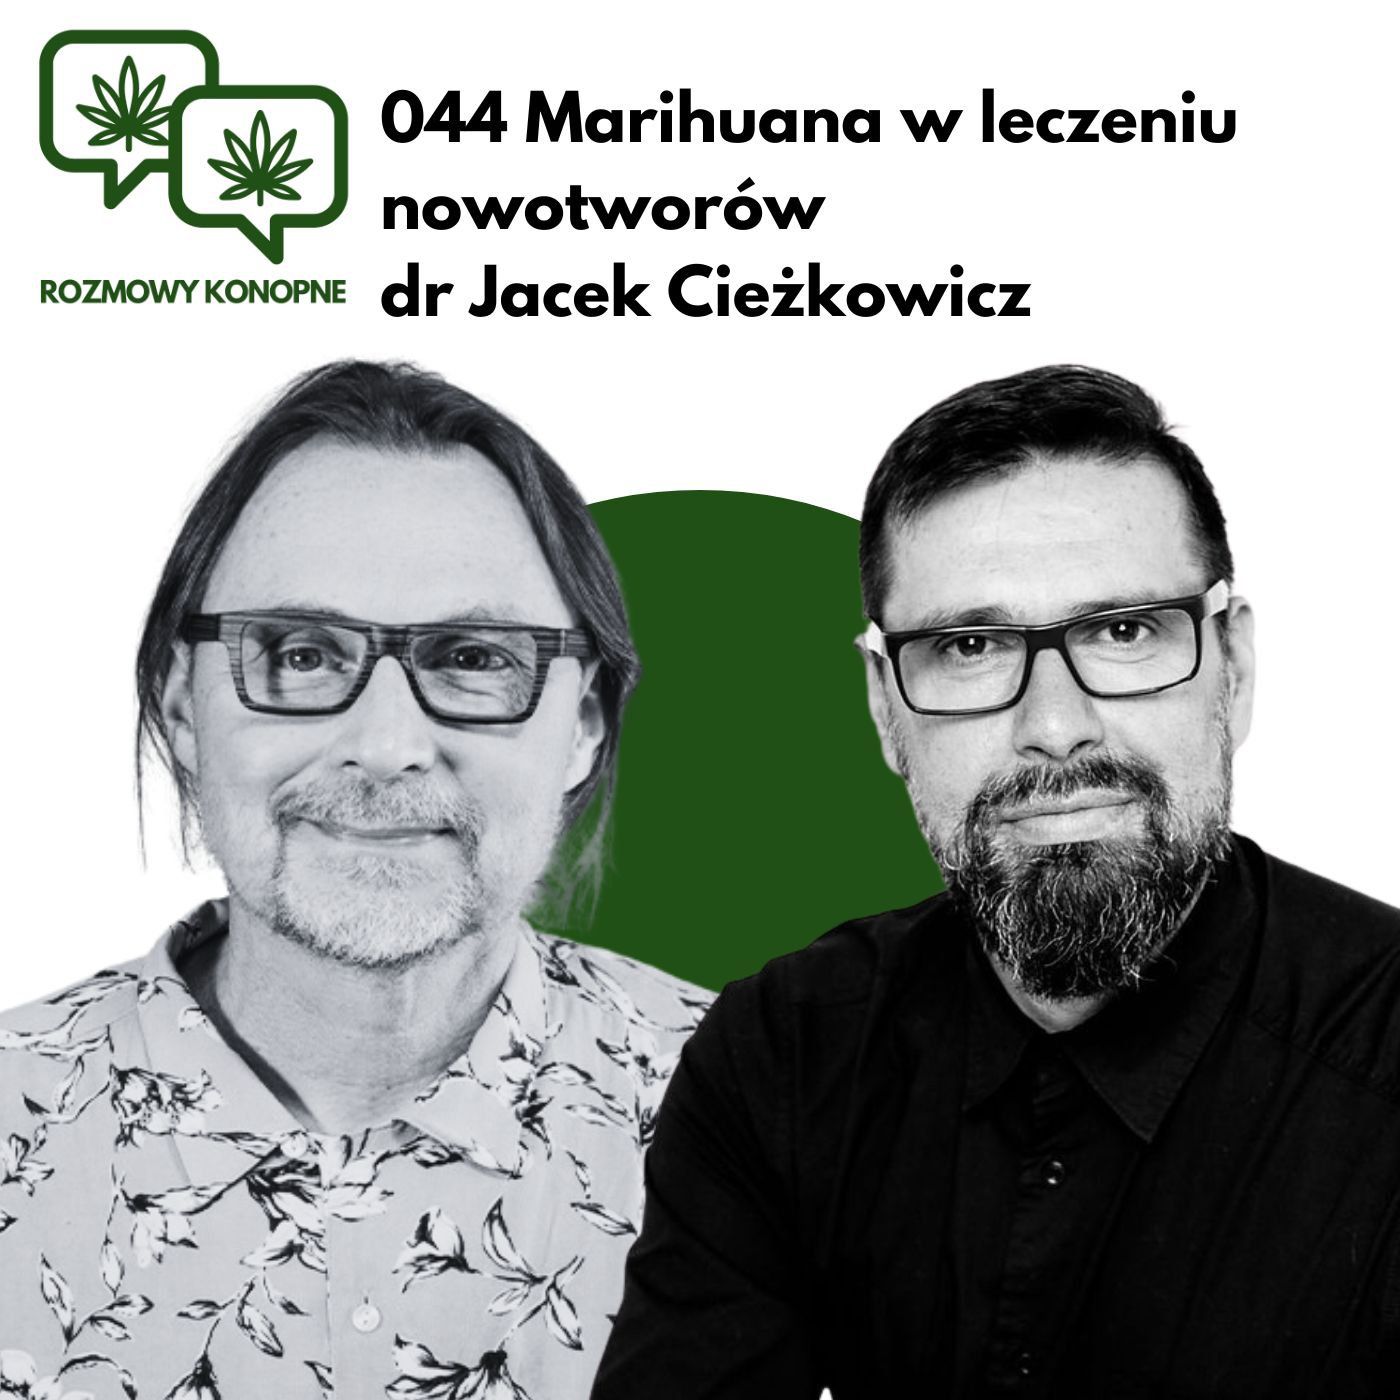 044  Marihuana w leczeniu nowotworów dr Jacek Cieżkowicz